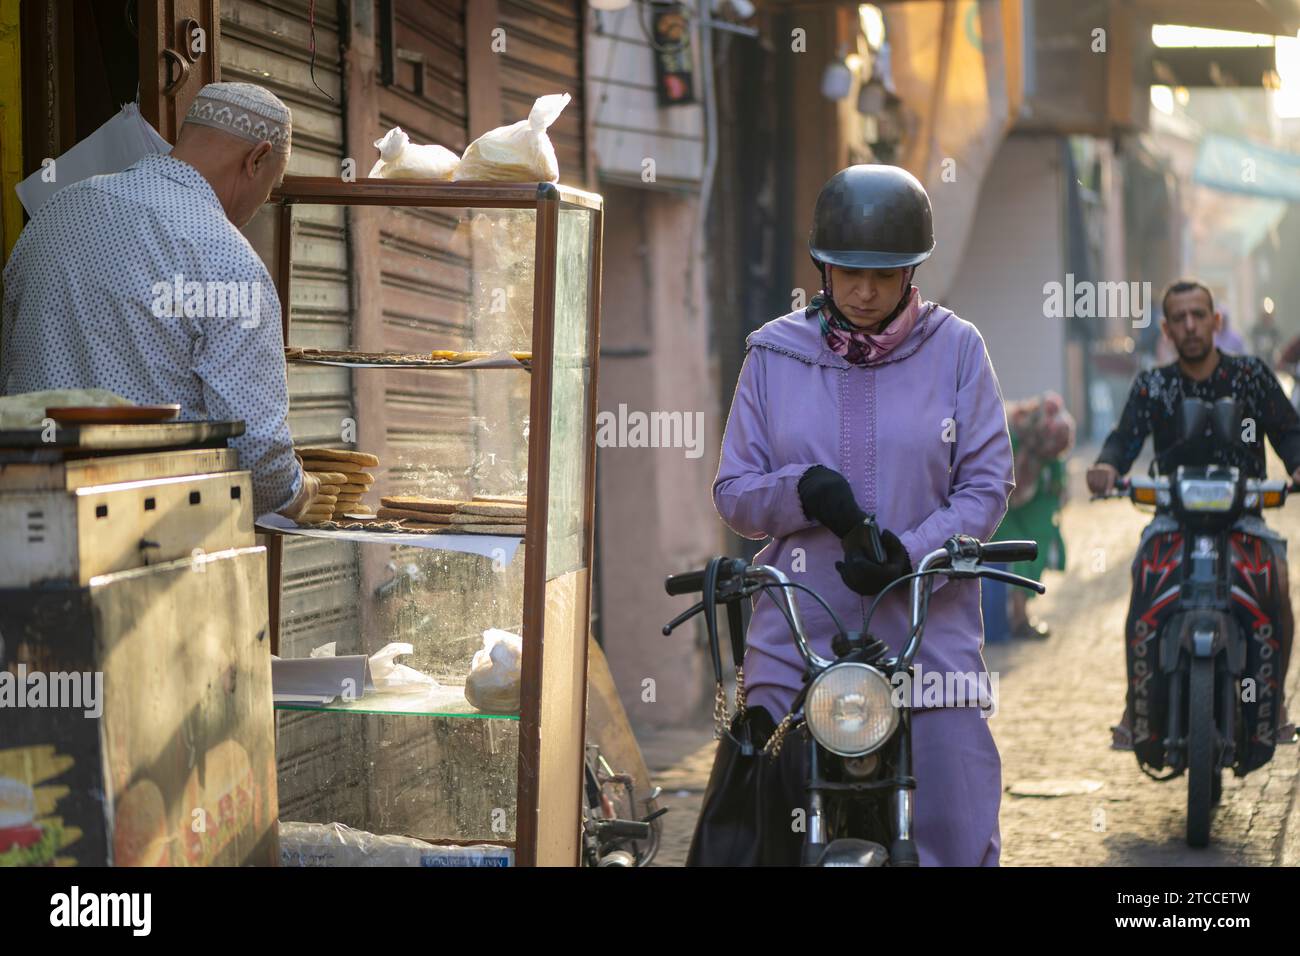 Marrakesch, Marokko: Marokkanische Frau auf einem Motorroller kauft frisches Brot in einer Bäckerei in der Medina von Marrakesch. Stockfoto